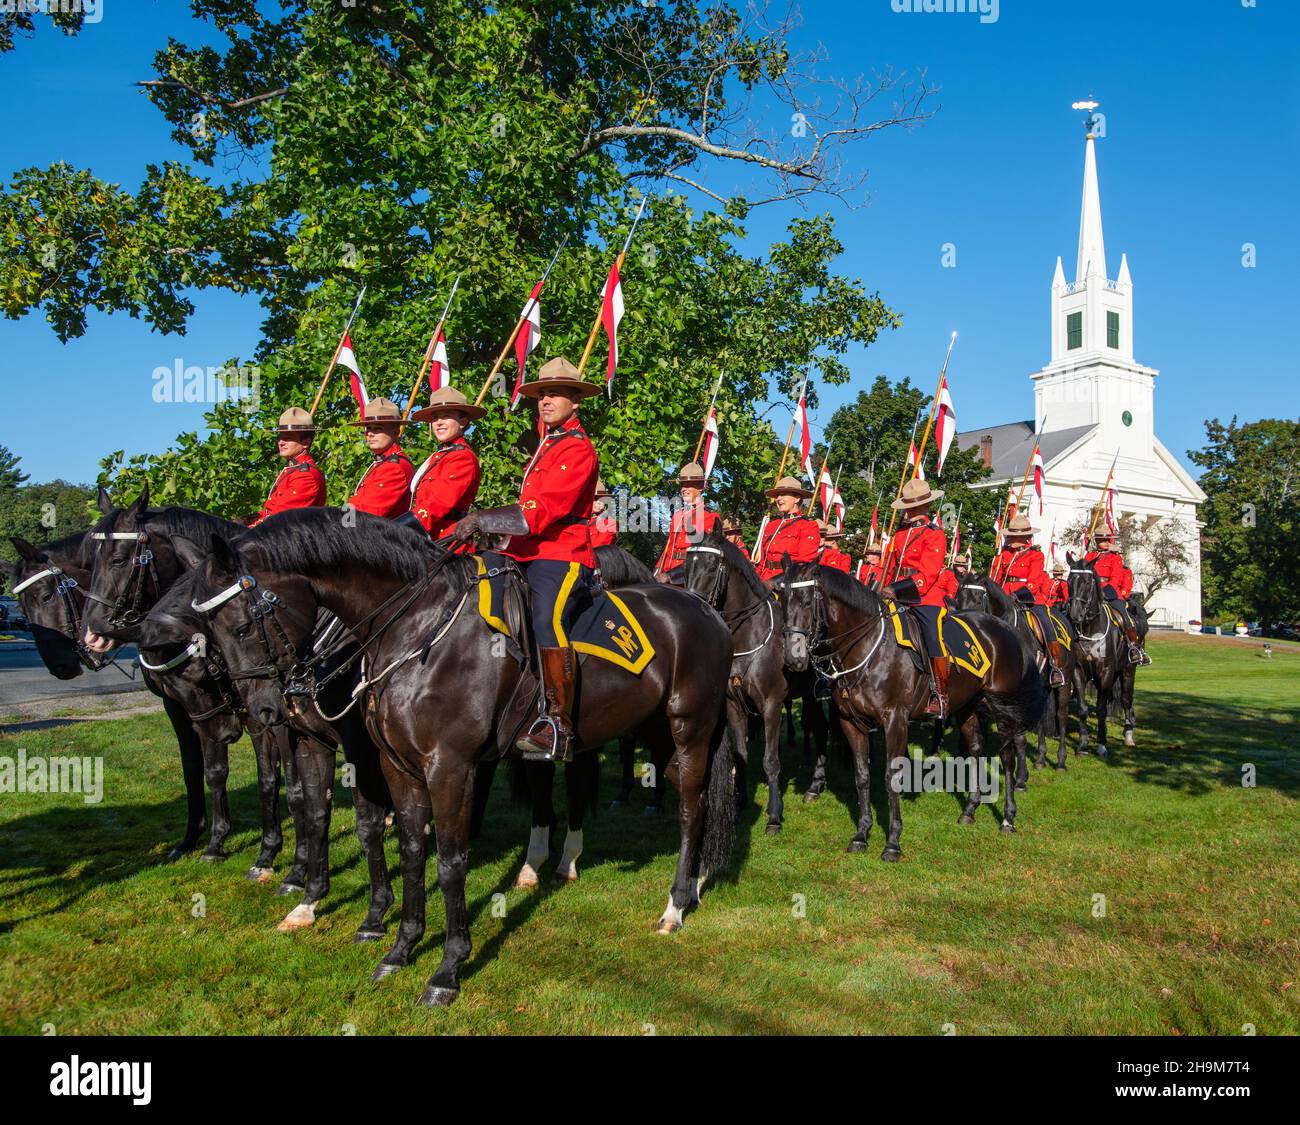 Gendarmerie royale du Canada en formation pour la parade de la foire de Topsfield, Topsfield, Massachusetts, États-Unis Banque D'Images